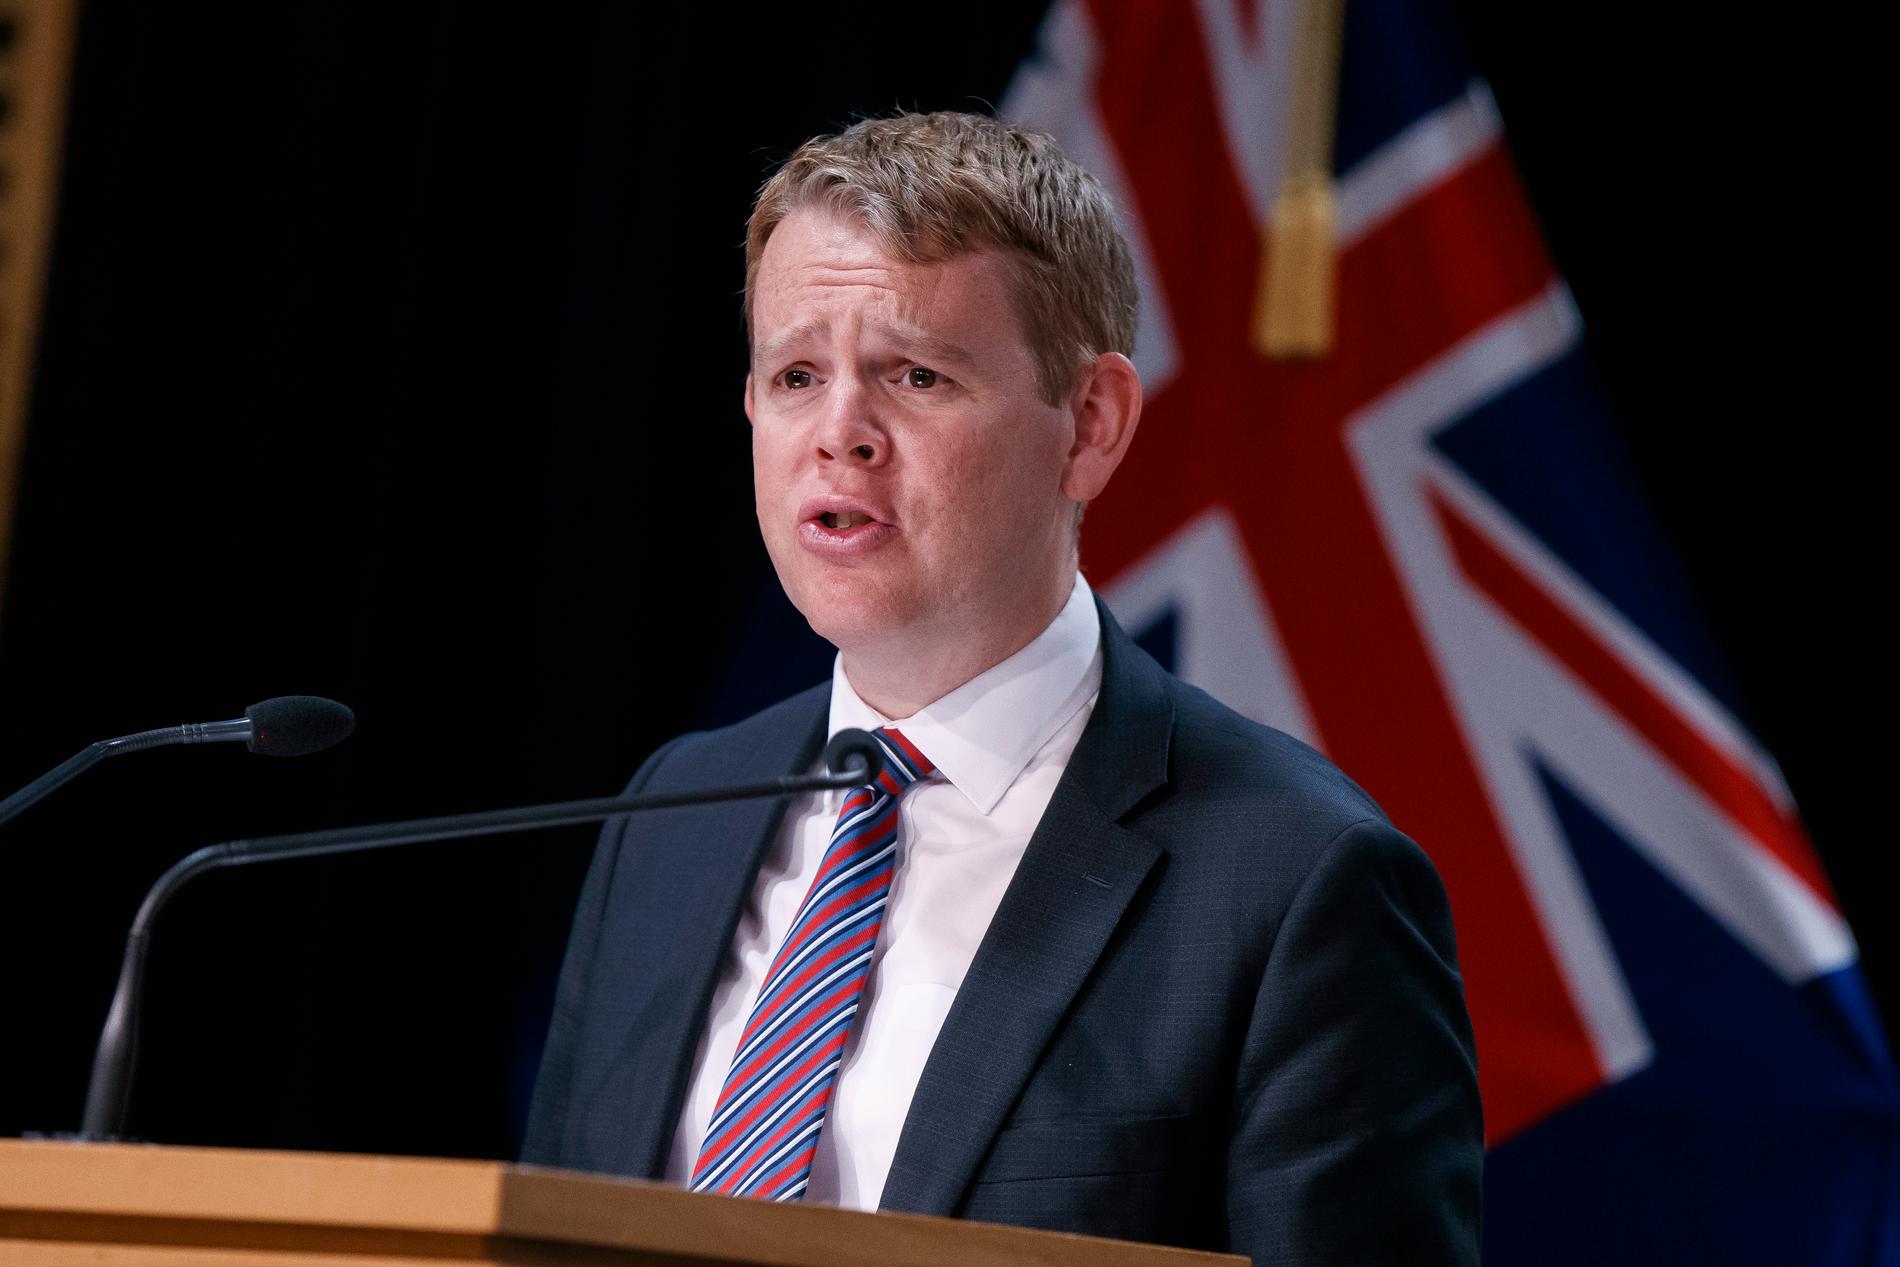 Chris Hipkins, ministern som ansvarar för Nya Zeelands hantering av pandemin. Arkivbild.